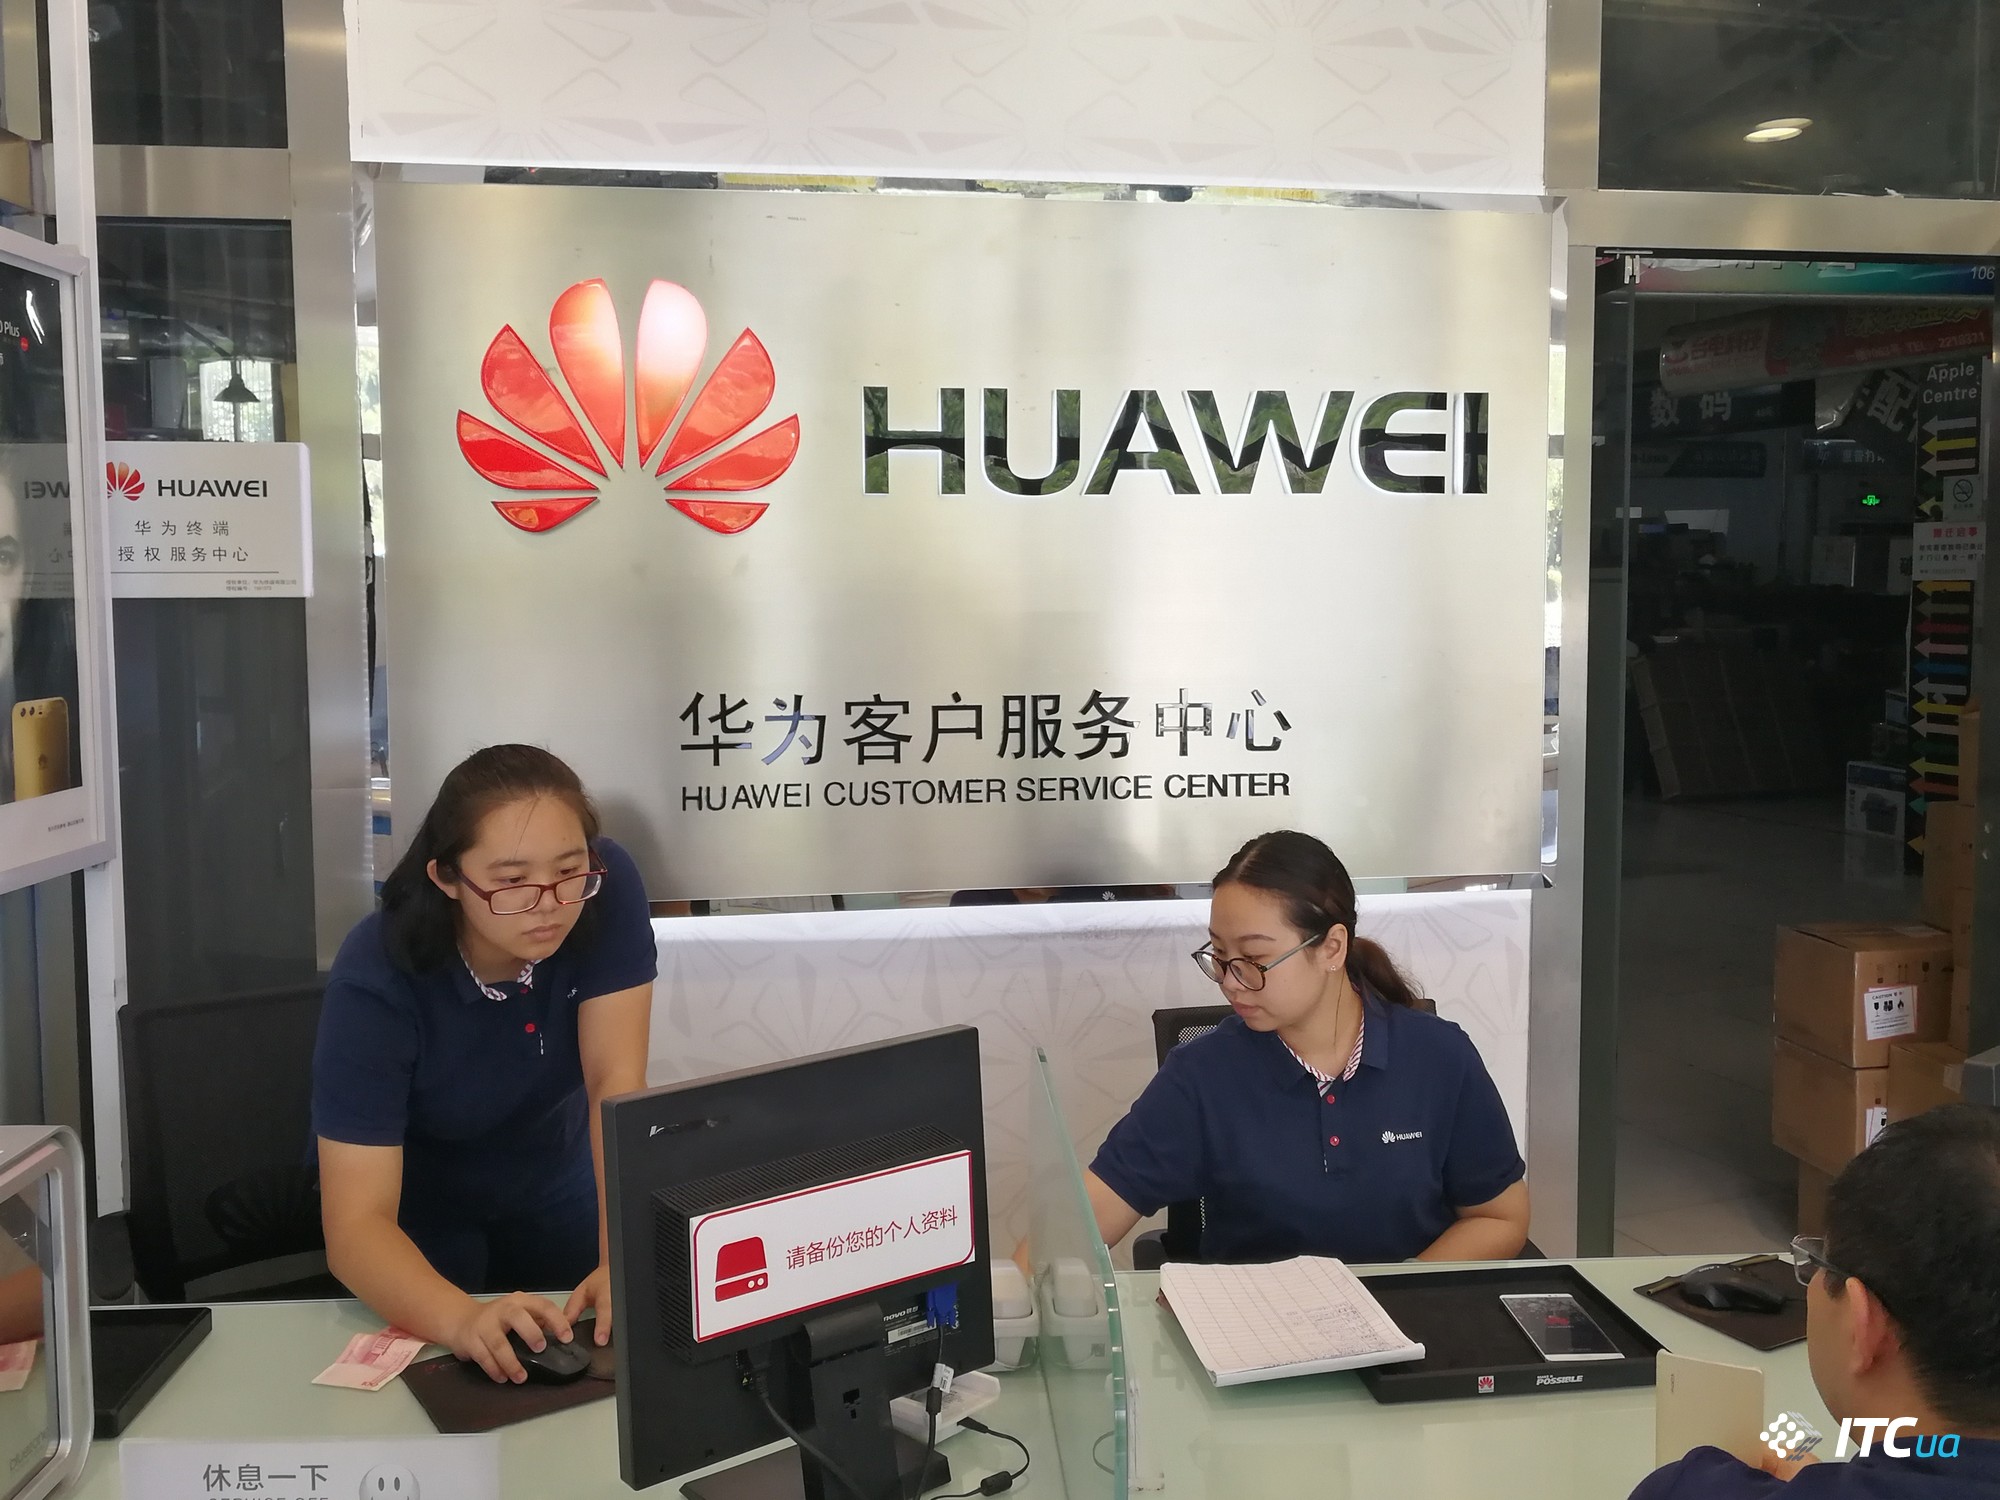   Huawei P10